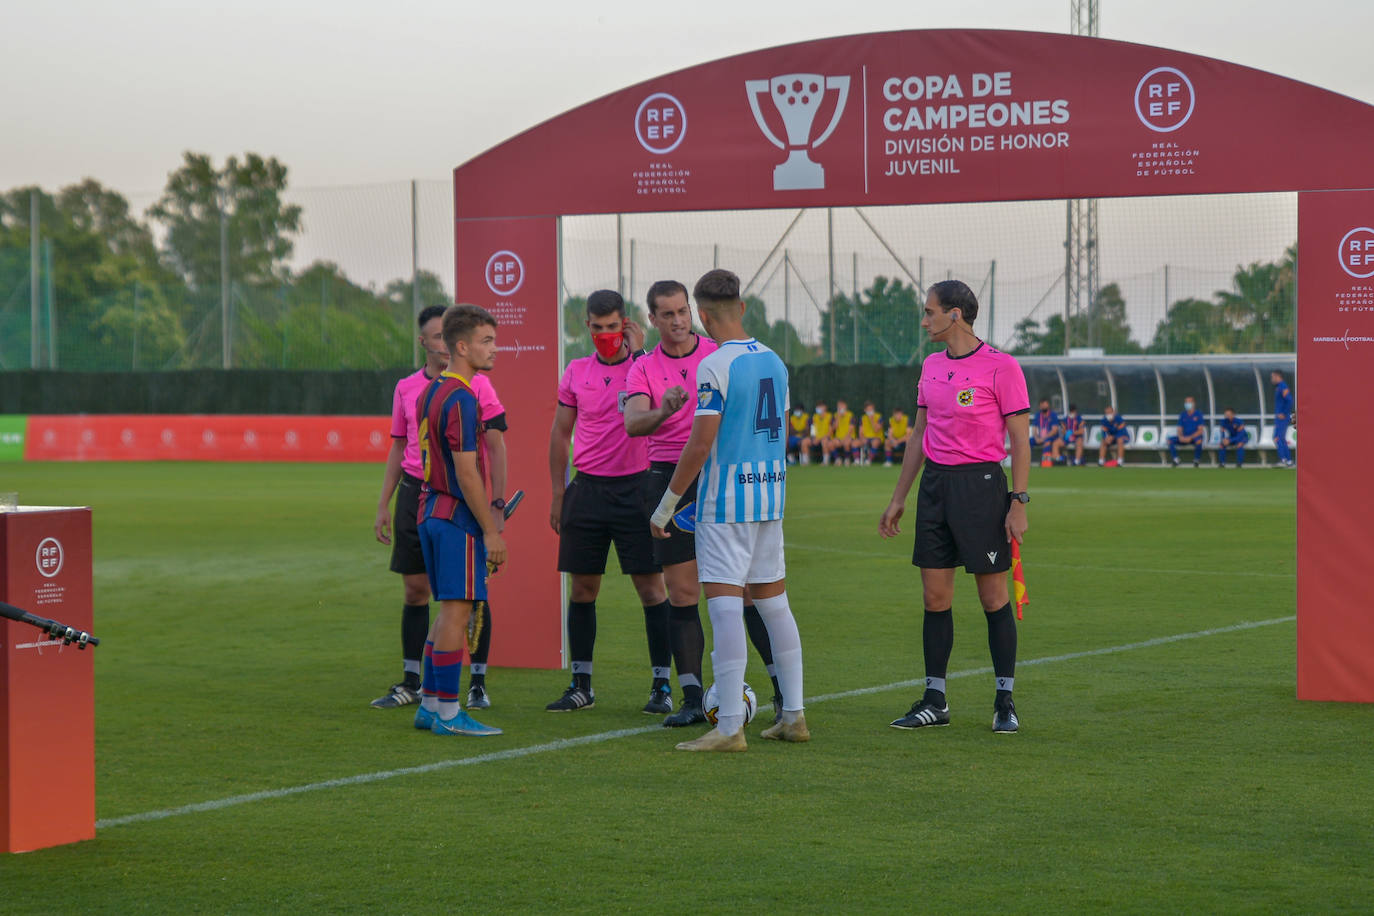 La semifinal de la Copa de Campeones juvenil entre el Málaga y el Barcelona, en imágenes